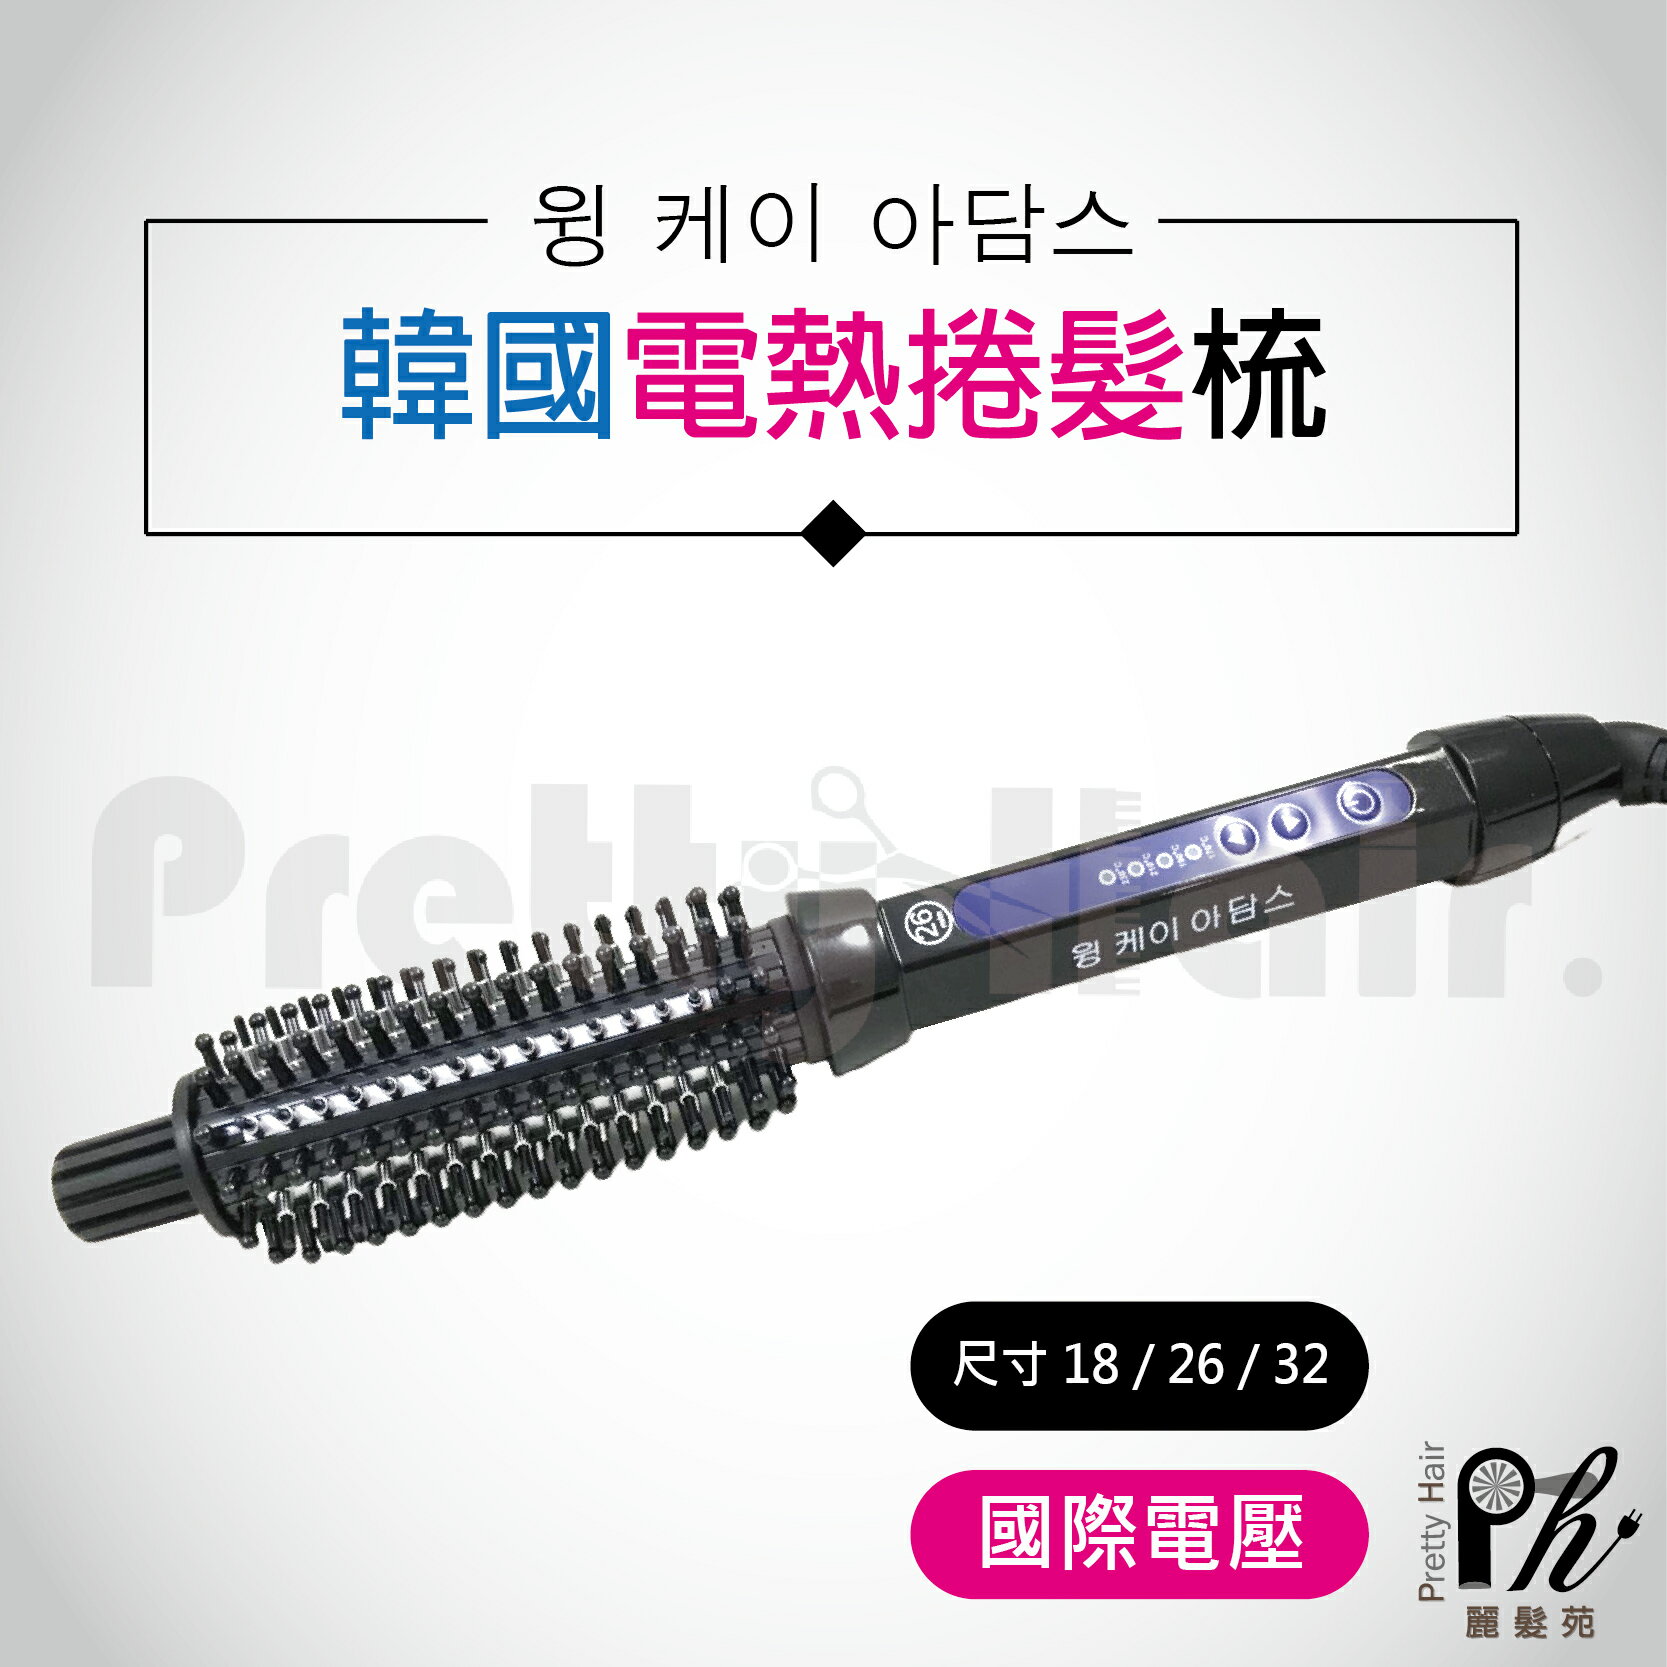 【麗髮苑】韓國 韓式電棒捲 電棒梳 IC 金屬梳電熱捲棒梳 電棒梳 捲髮器 出國旅遊 美髮造型 HZ909